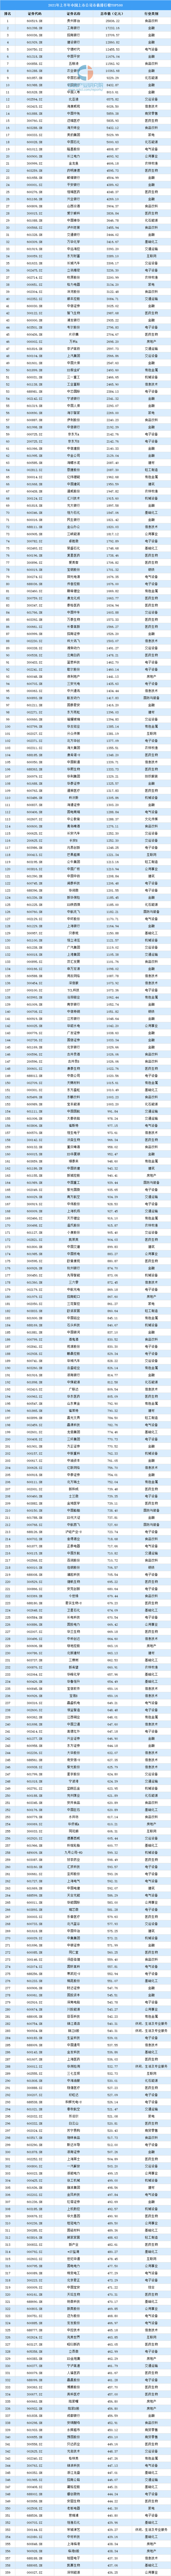 中国市值排行榜_2021年上半年中国上市企业市值排行榜TOP500(图)